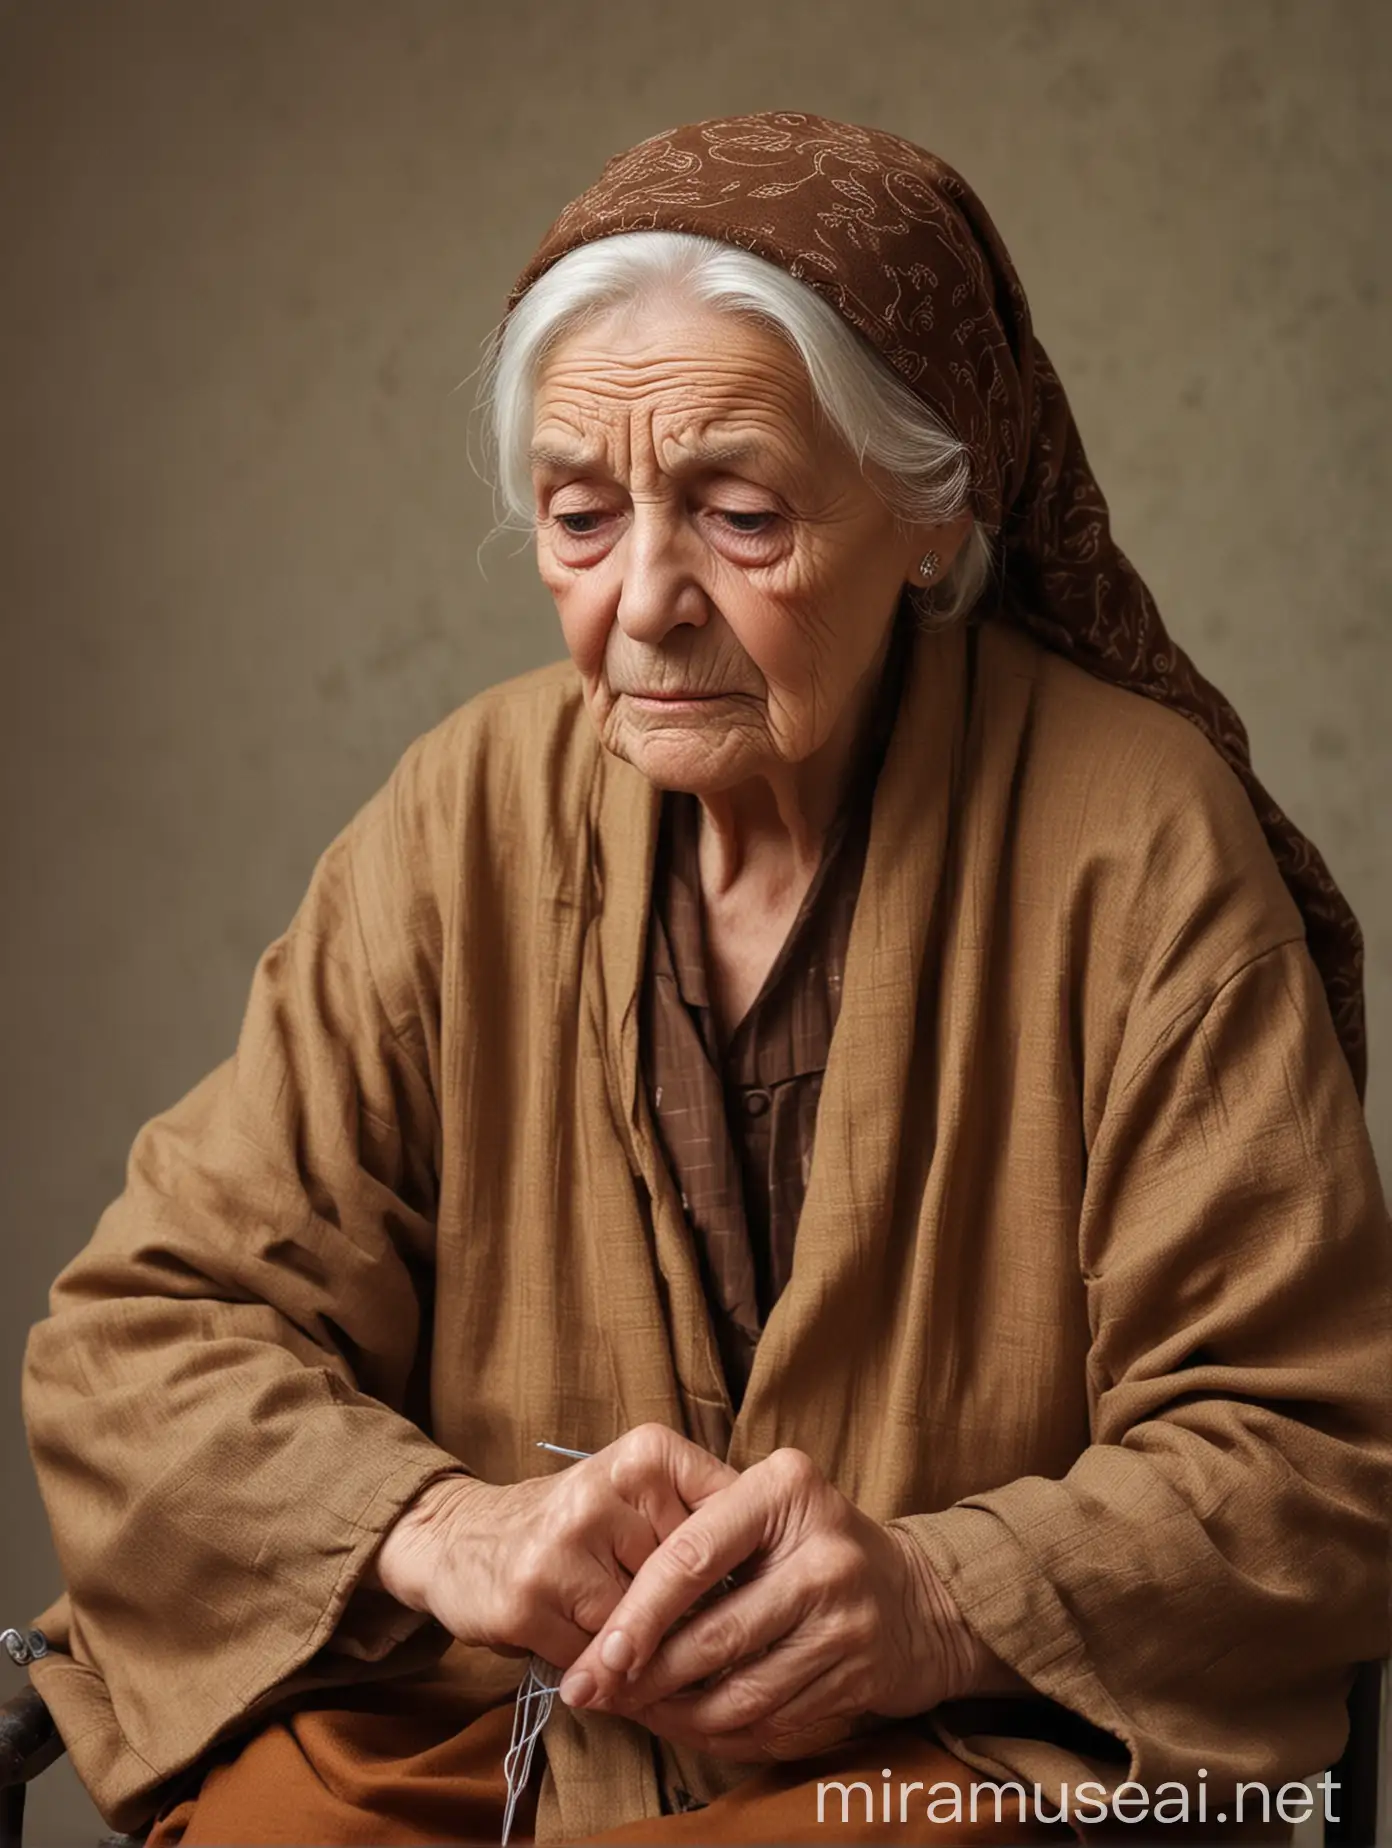 سيدة مسنة حزينة ترتدي طرحة وجلباب بني تجلس على كرسي في يدها ابره تخيط بها تيشرت